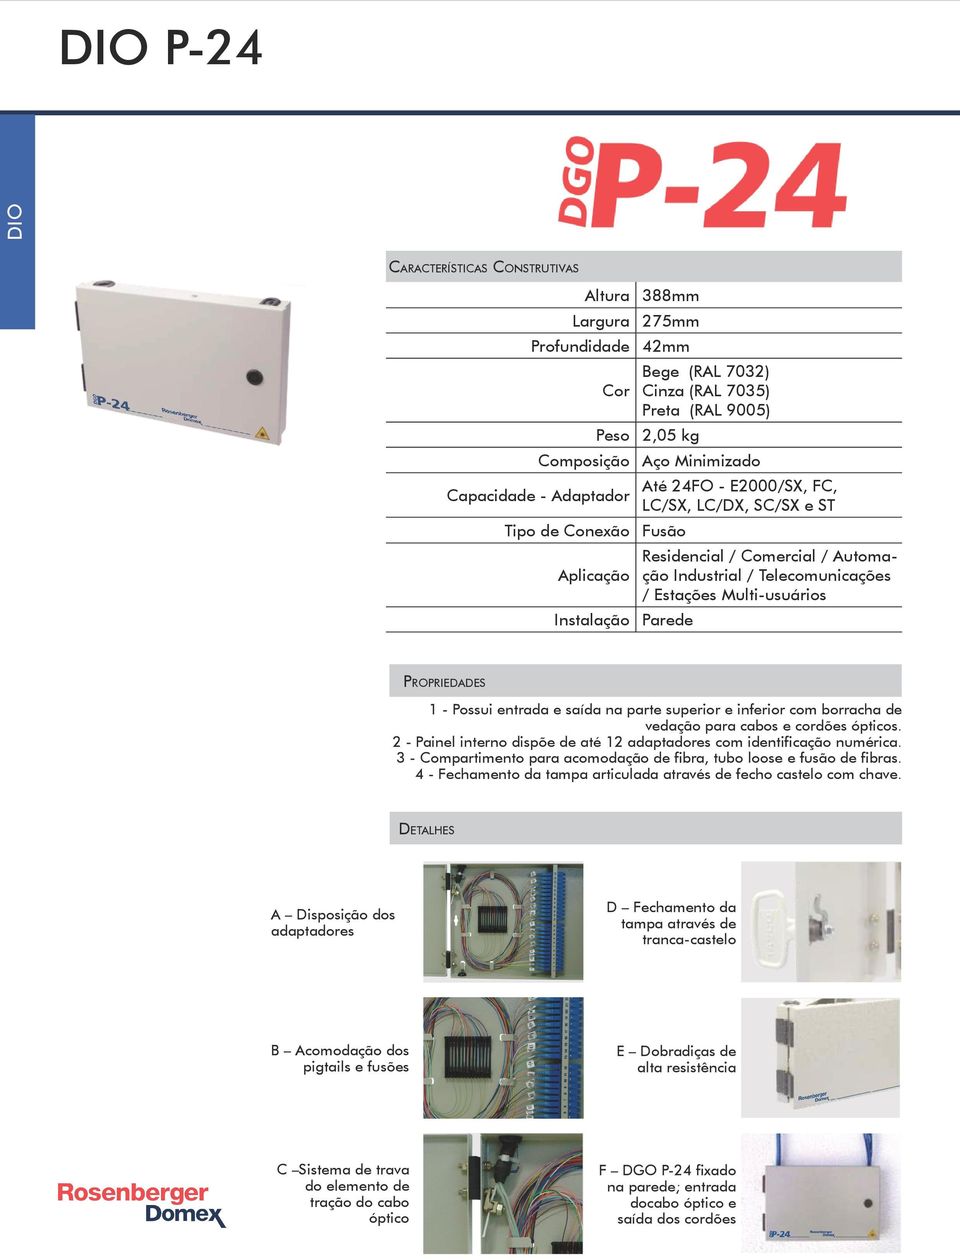 2 - Painel interno dispõe de até 12 adaptadores com identificação numérica. 3 - Compartimento para acomodação de fibra, tubo loose e fusão de fibras.